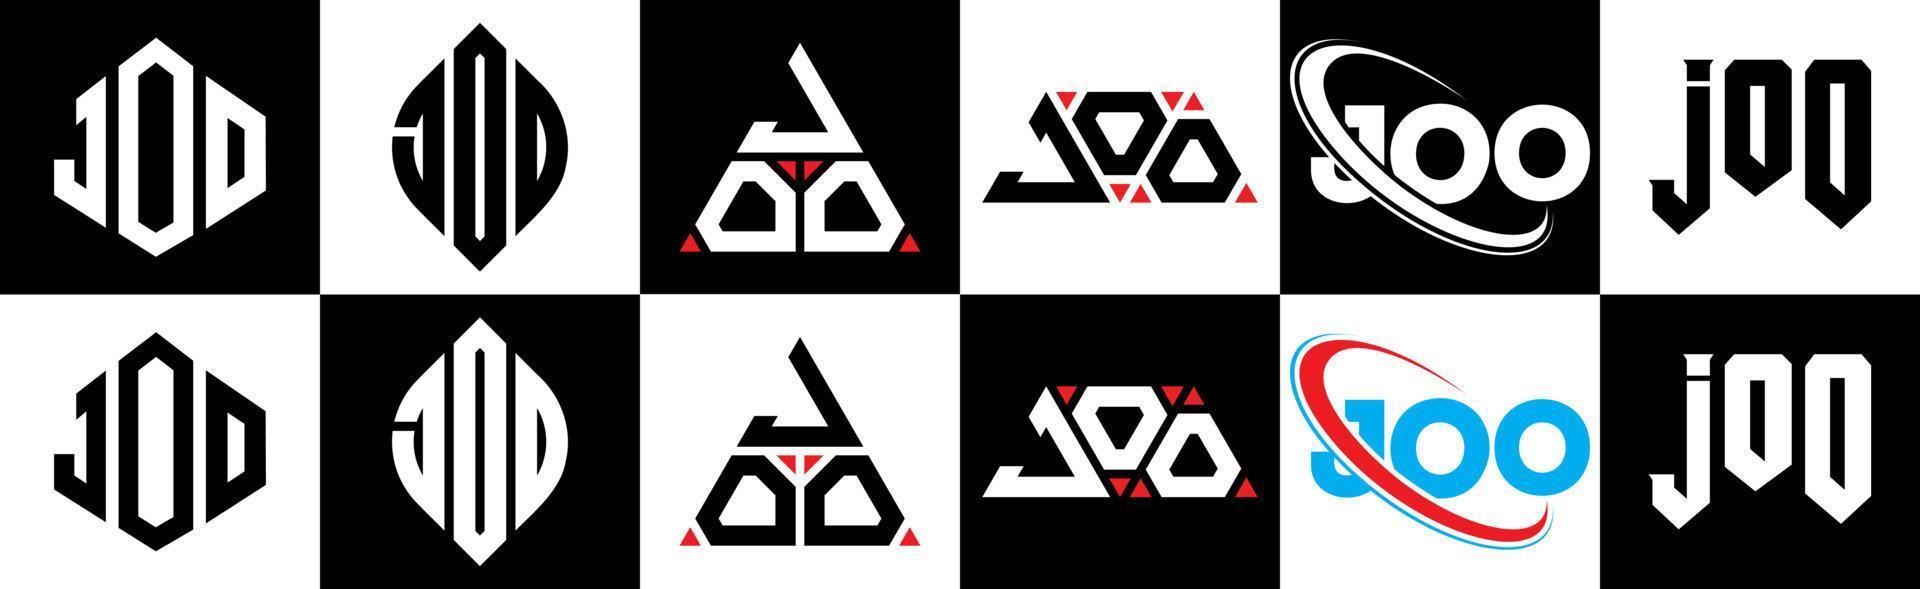 création de logo de lettre joo en six styles. joo polygone, cercle, triangle, hexagone, style plat et simple avec logo de lettre de variation de couleur noir et blanc dans un plan de travail. joo logo minimaliste et classique vecteur